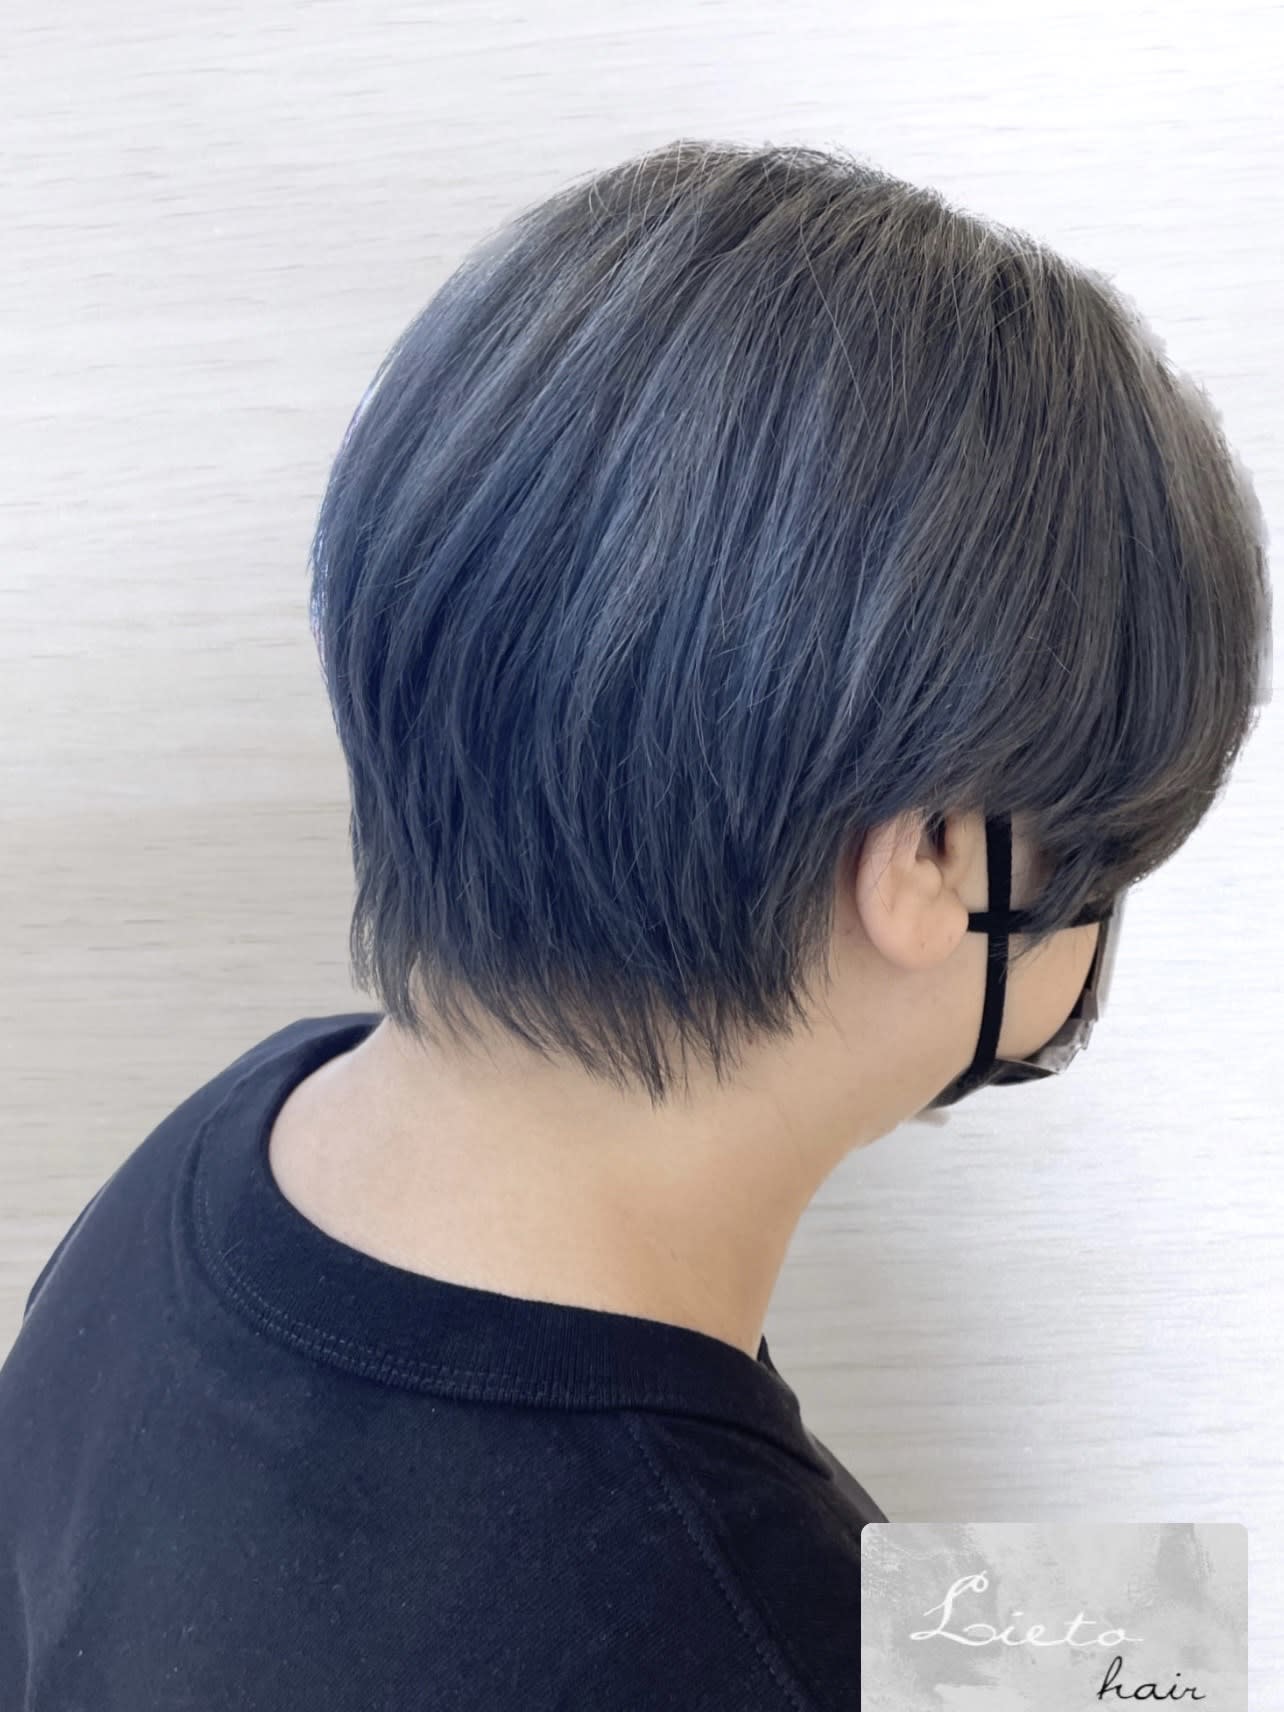 Lieto hair【リエートヘアー】のスタイル紹介。マッシュショート